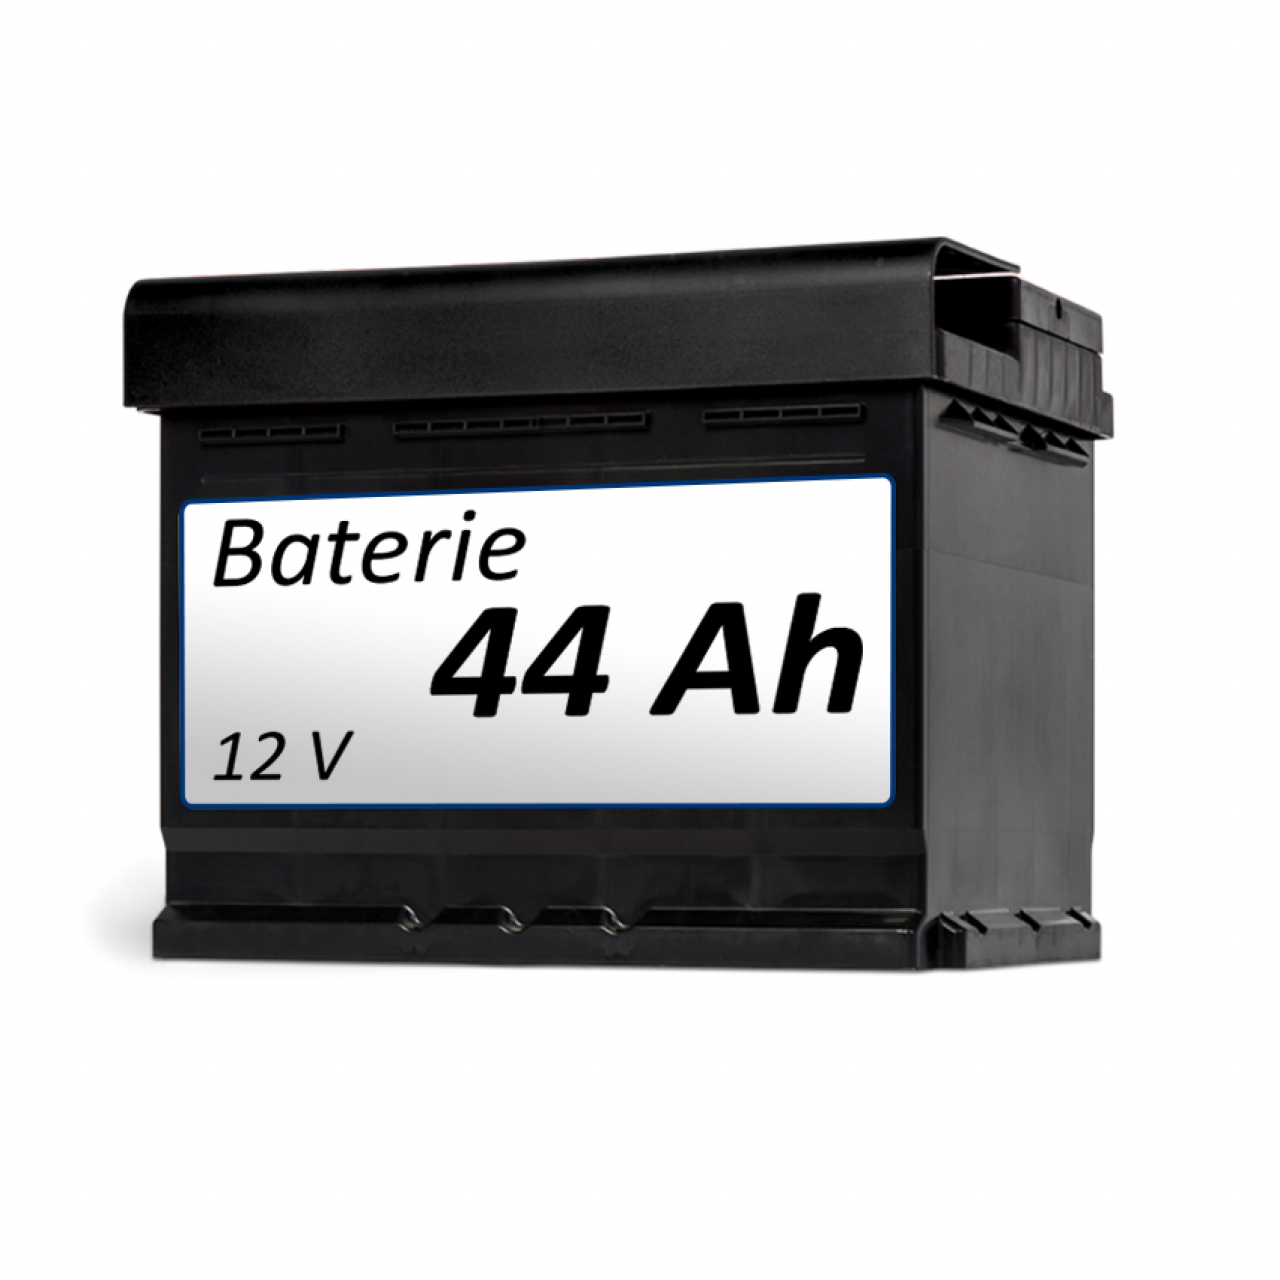 Baterie k vozíku Baterie 44 Ah - samostatně foto